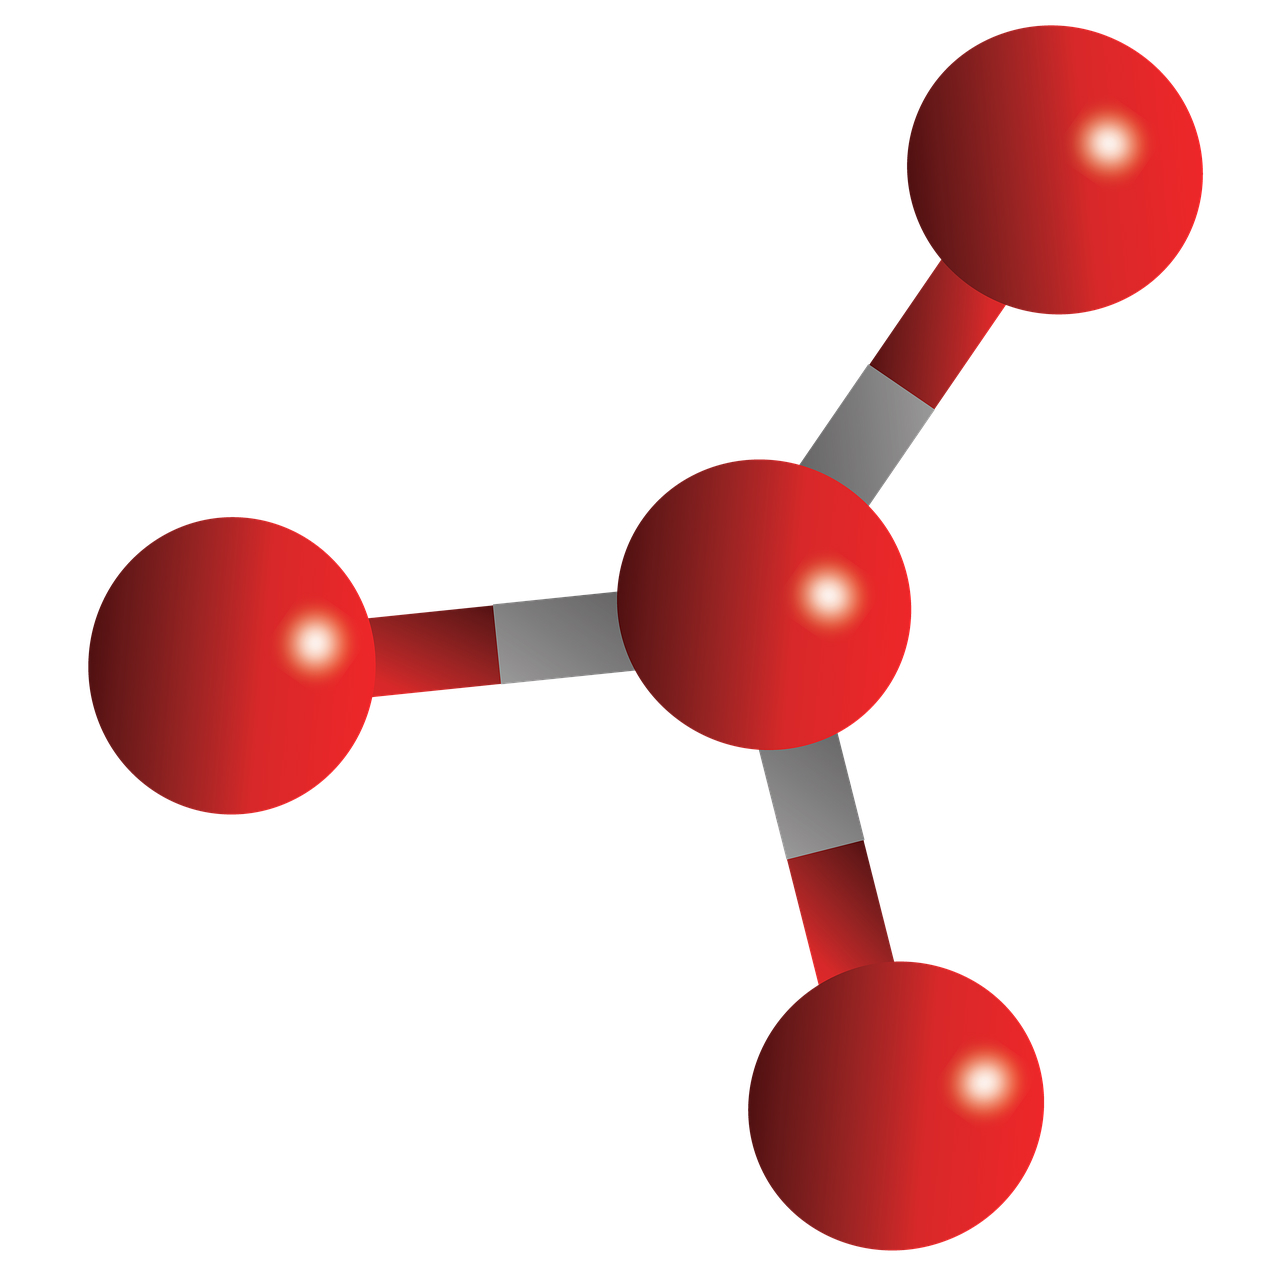 Задачи на вывод молекулярной формулы вещества по продуктам сгорания